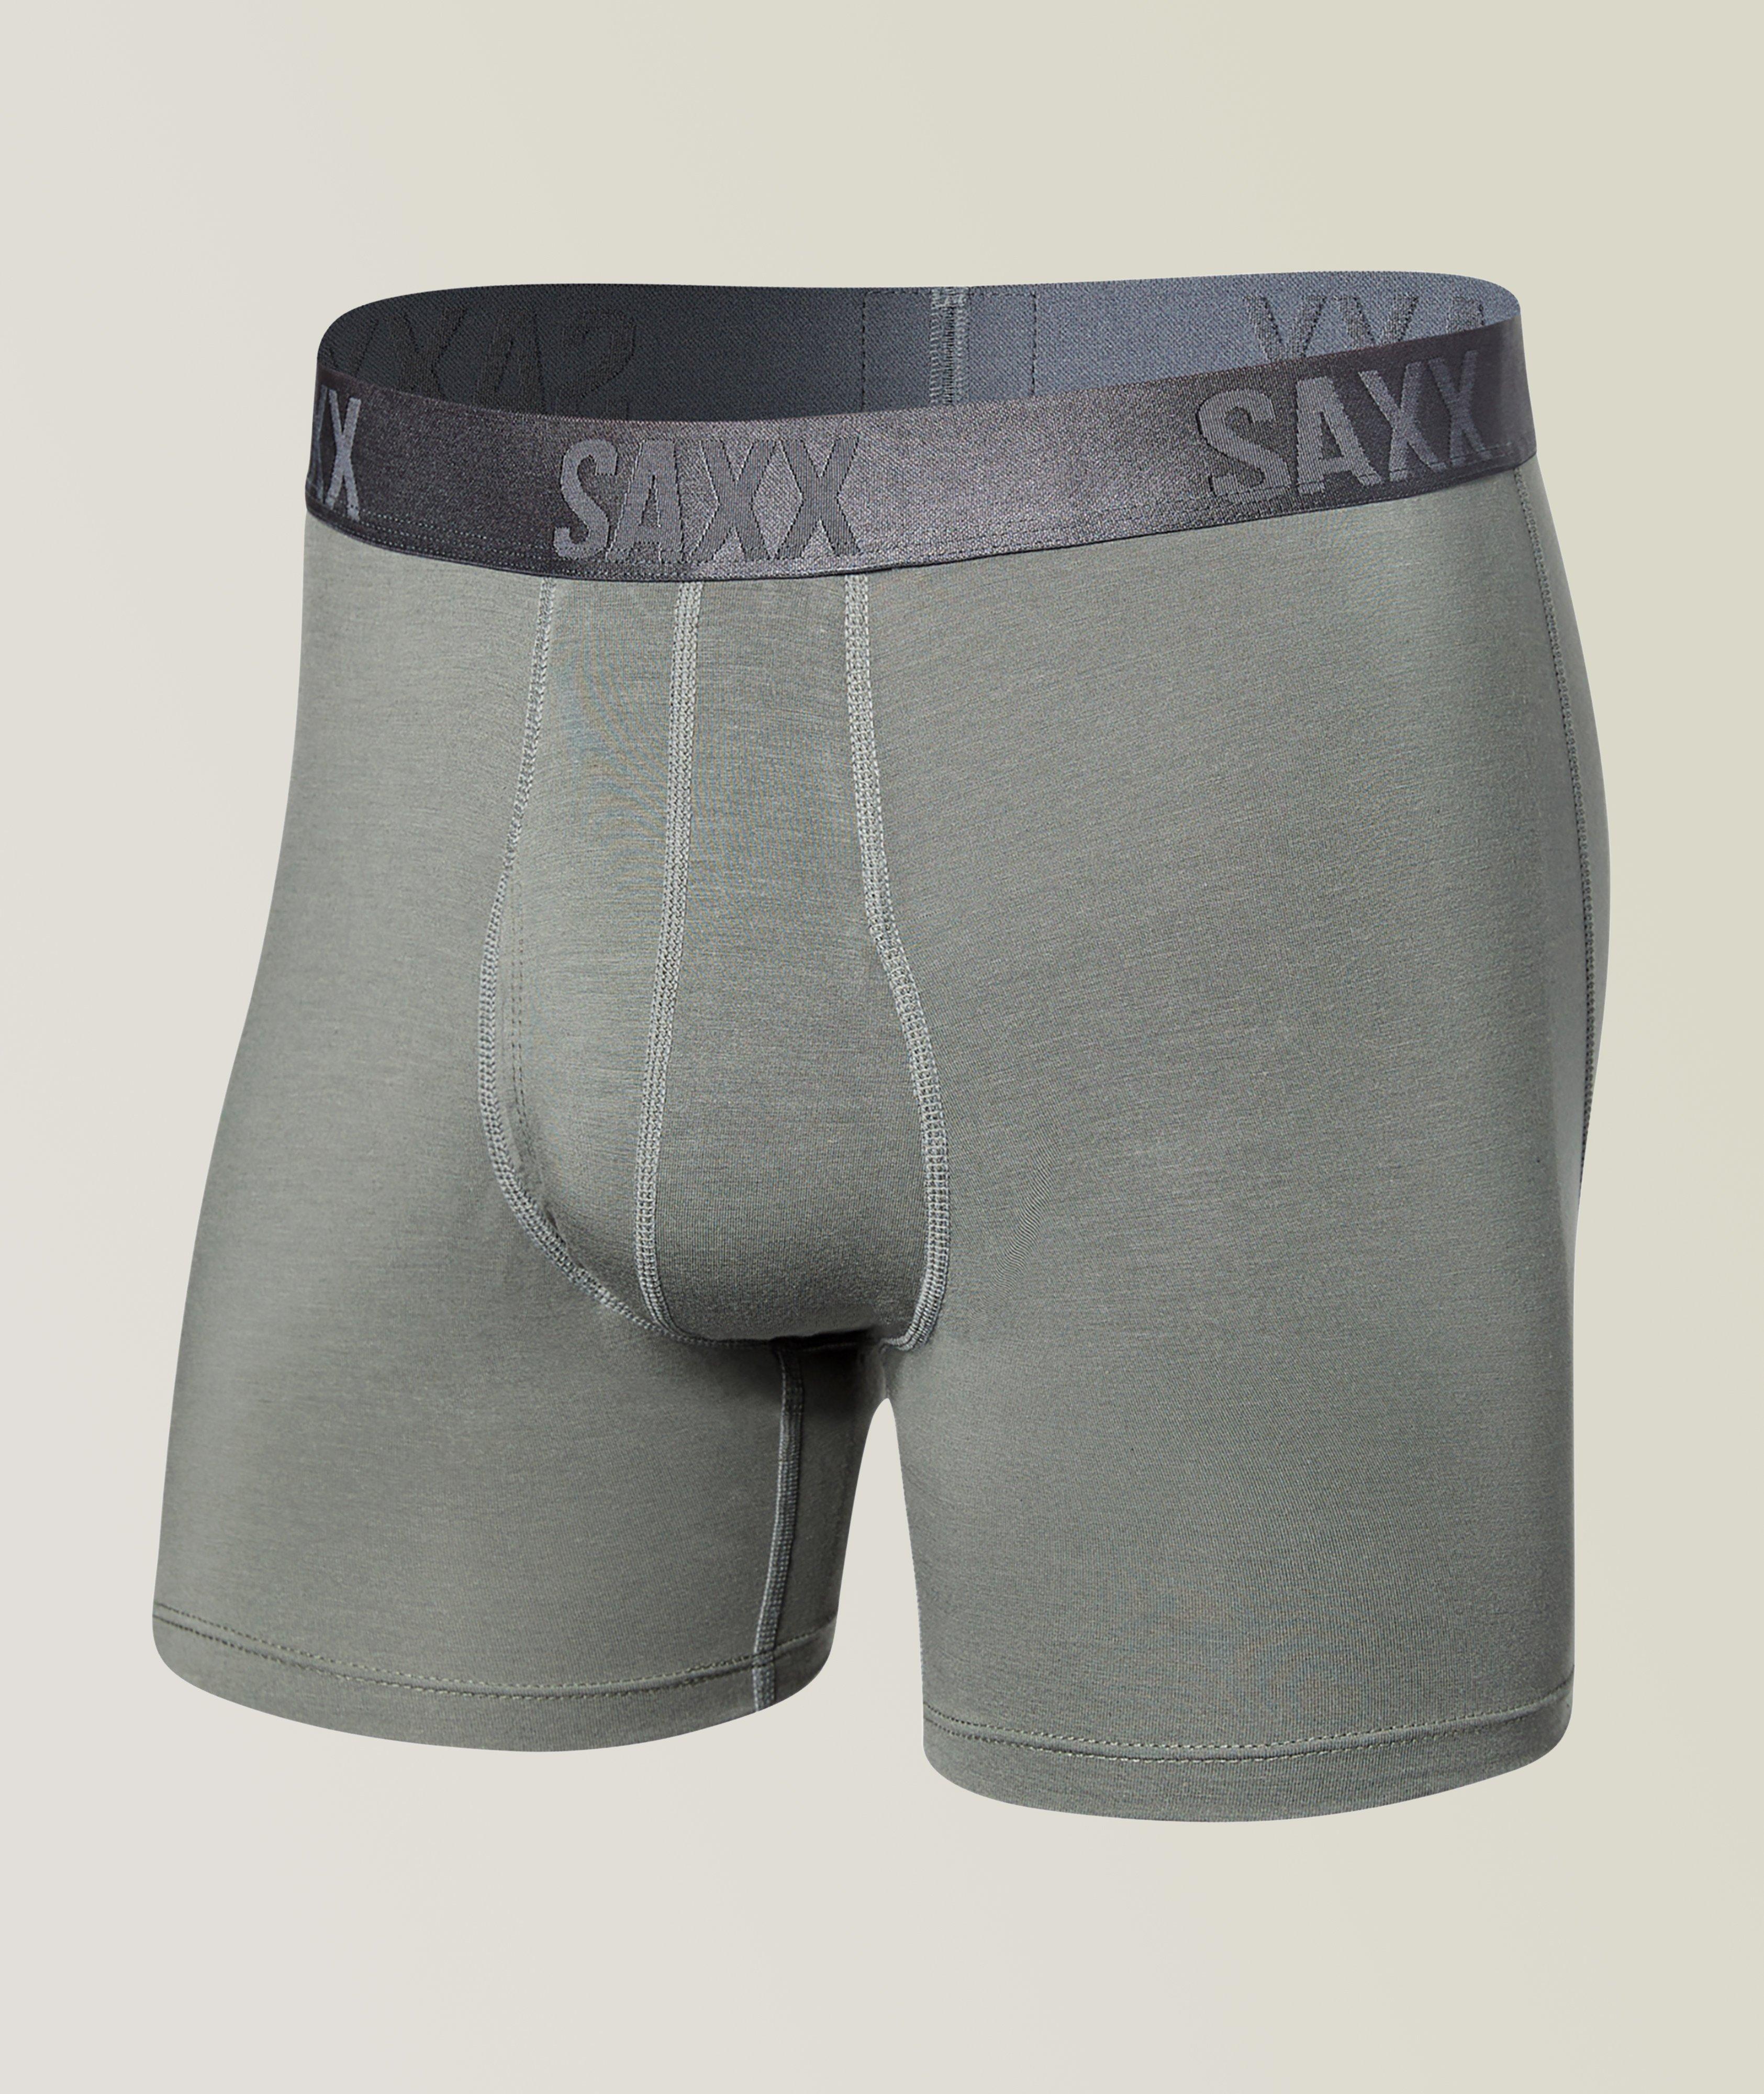 SAXX, Underwear, Boxers, Briefs & More